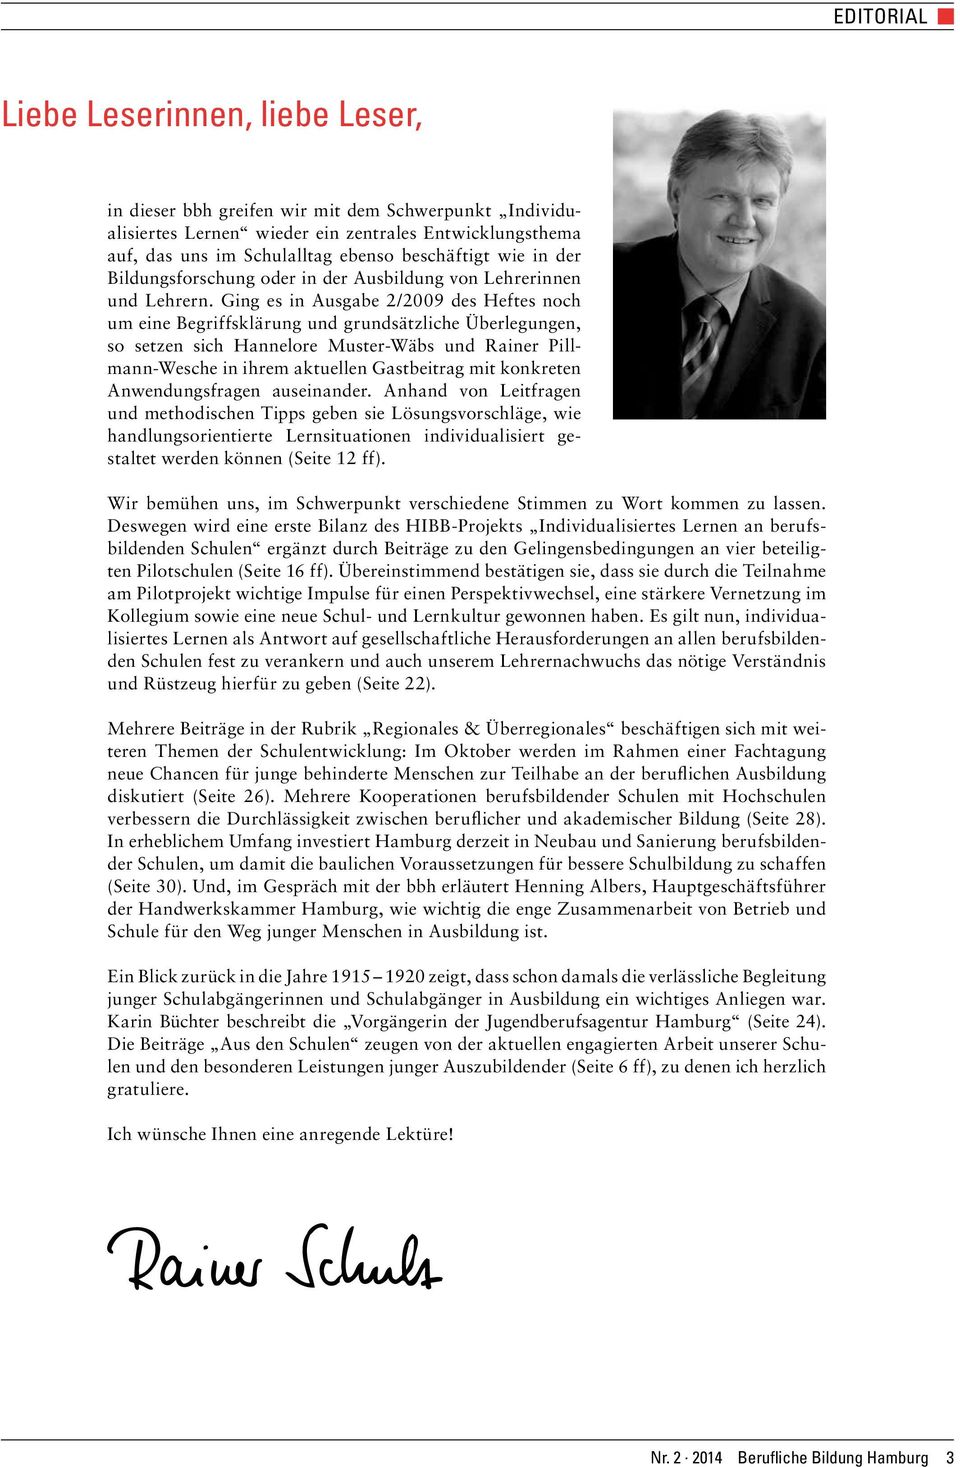 Ging es in Ausgabe 2/2009 des Heftes noch um eine Begriffsklärung und grundsätzliche Überlegungen, so setzen sich Hannelore Muster-Wäbs und Rainer Pillmann-Wesche in ihrem aktuellen Gastbeitrag mit